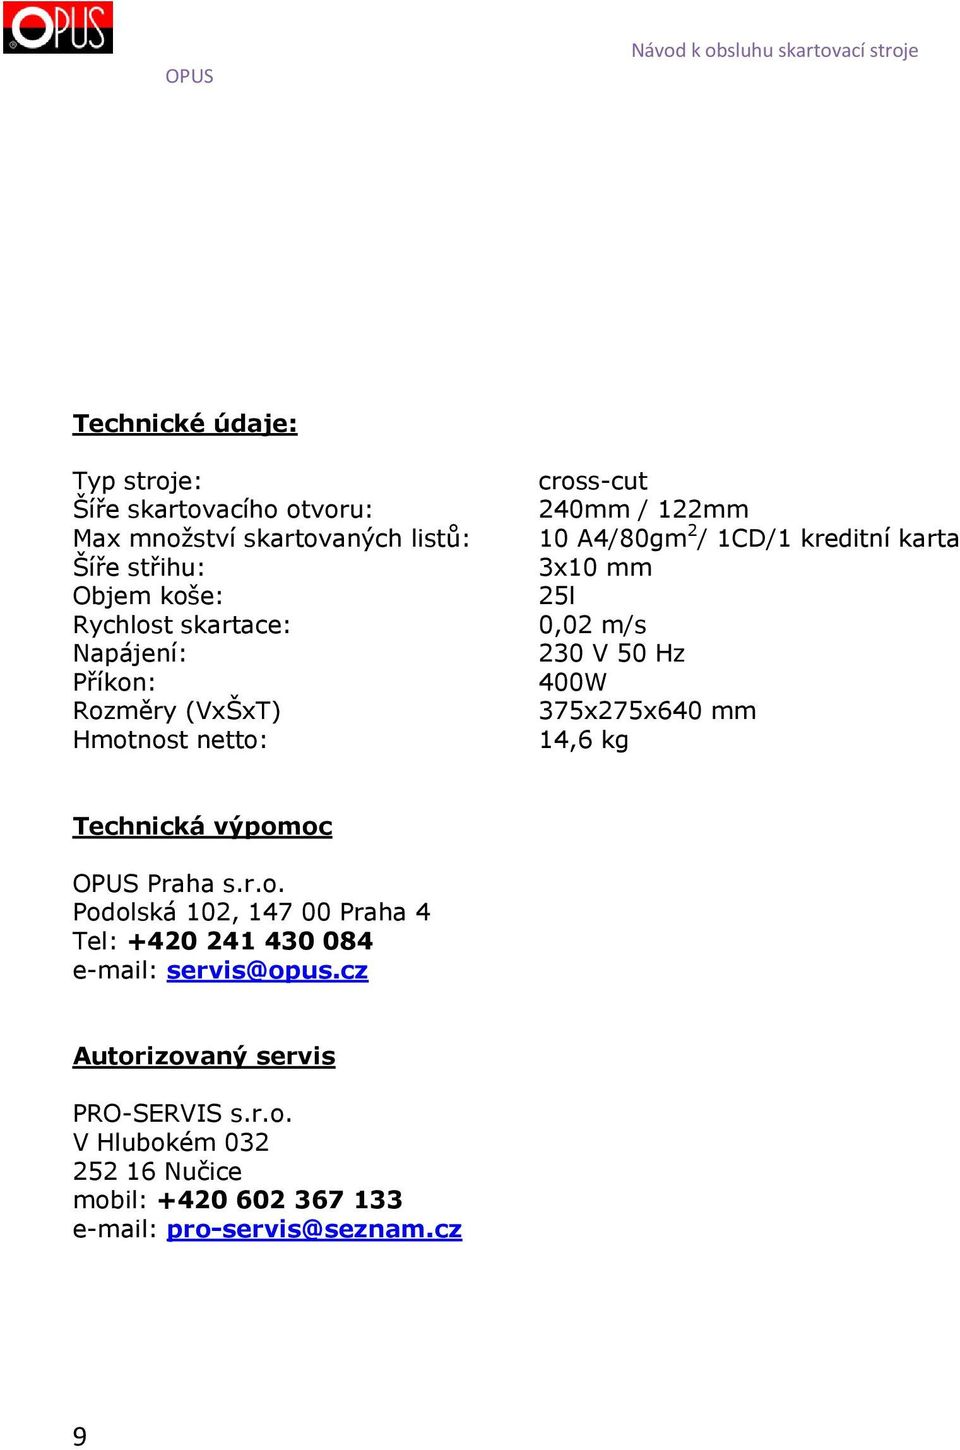 230 V 50 Hz 400W 375x275x640 mm 14,6 kg Technická výpomoc OPUS Praha s.r.o. Podolská 102, 147 00 Praha 4 Tel: +420 241 430 084 e-mail: servis@opus.